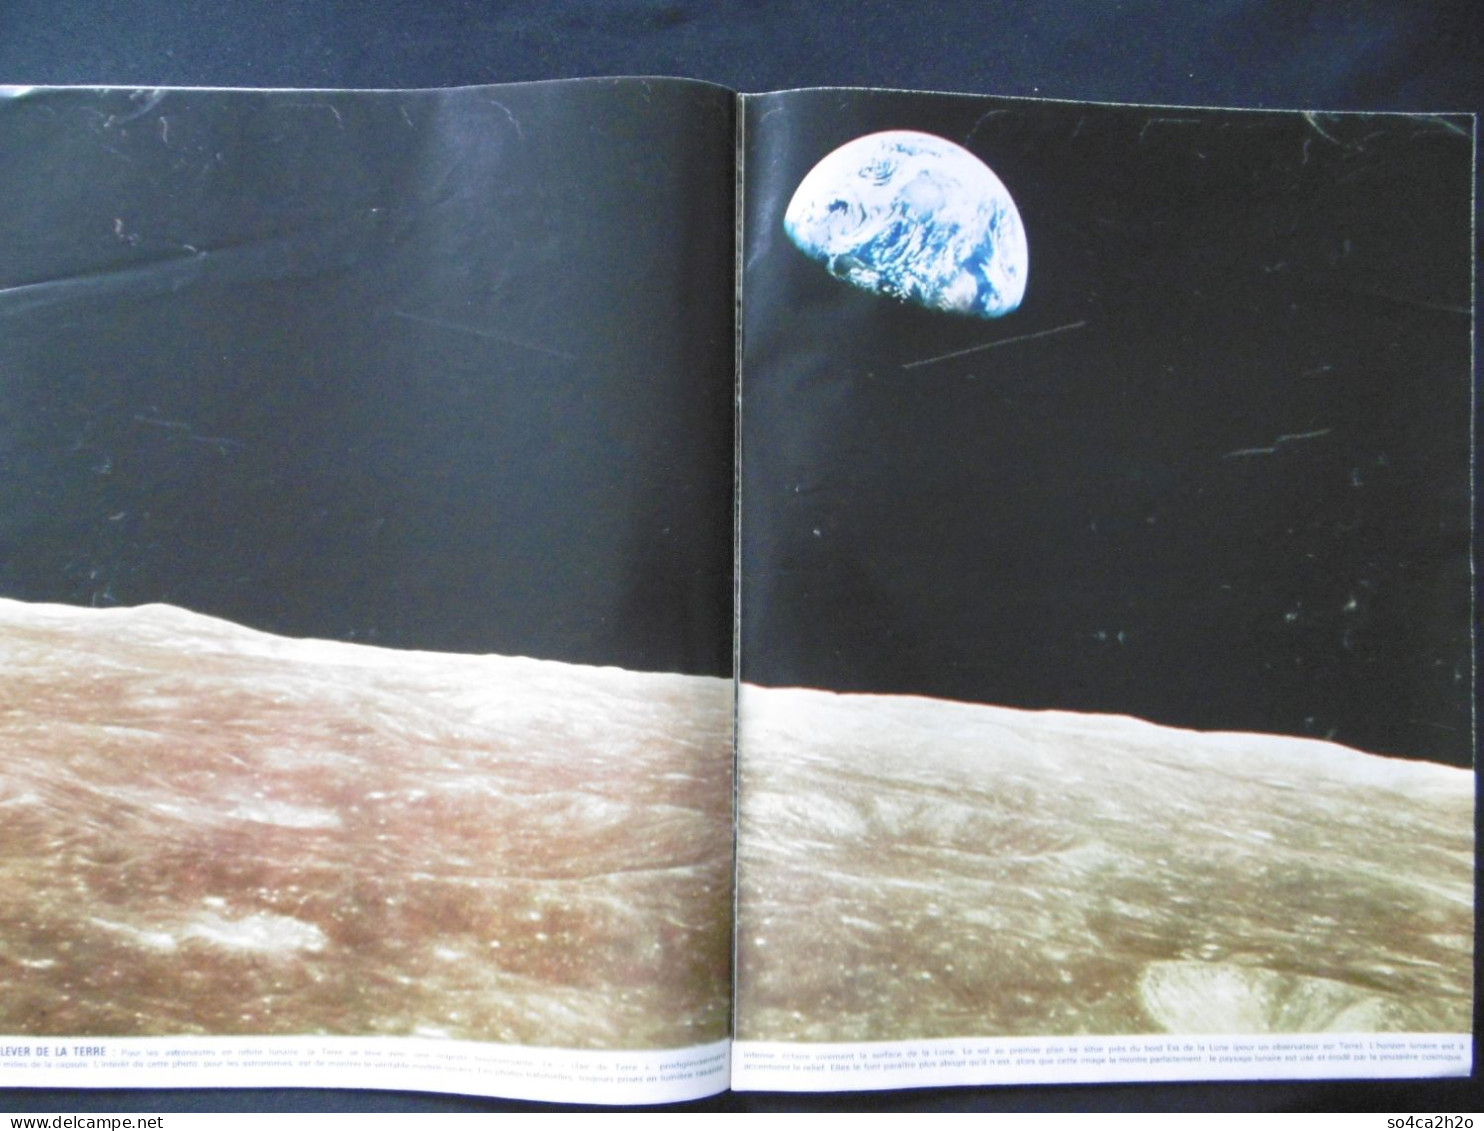 Paris Match N°1027 11 Janvier 1969 Lever De Terre Sur La Lune - General Issues